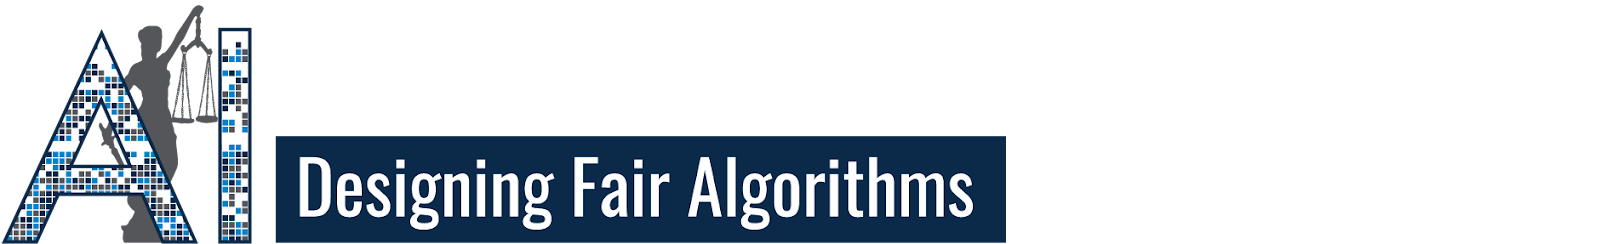 Designing Fair Algorithms